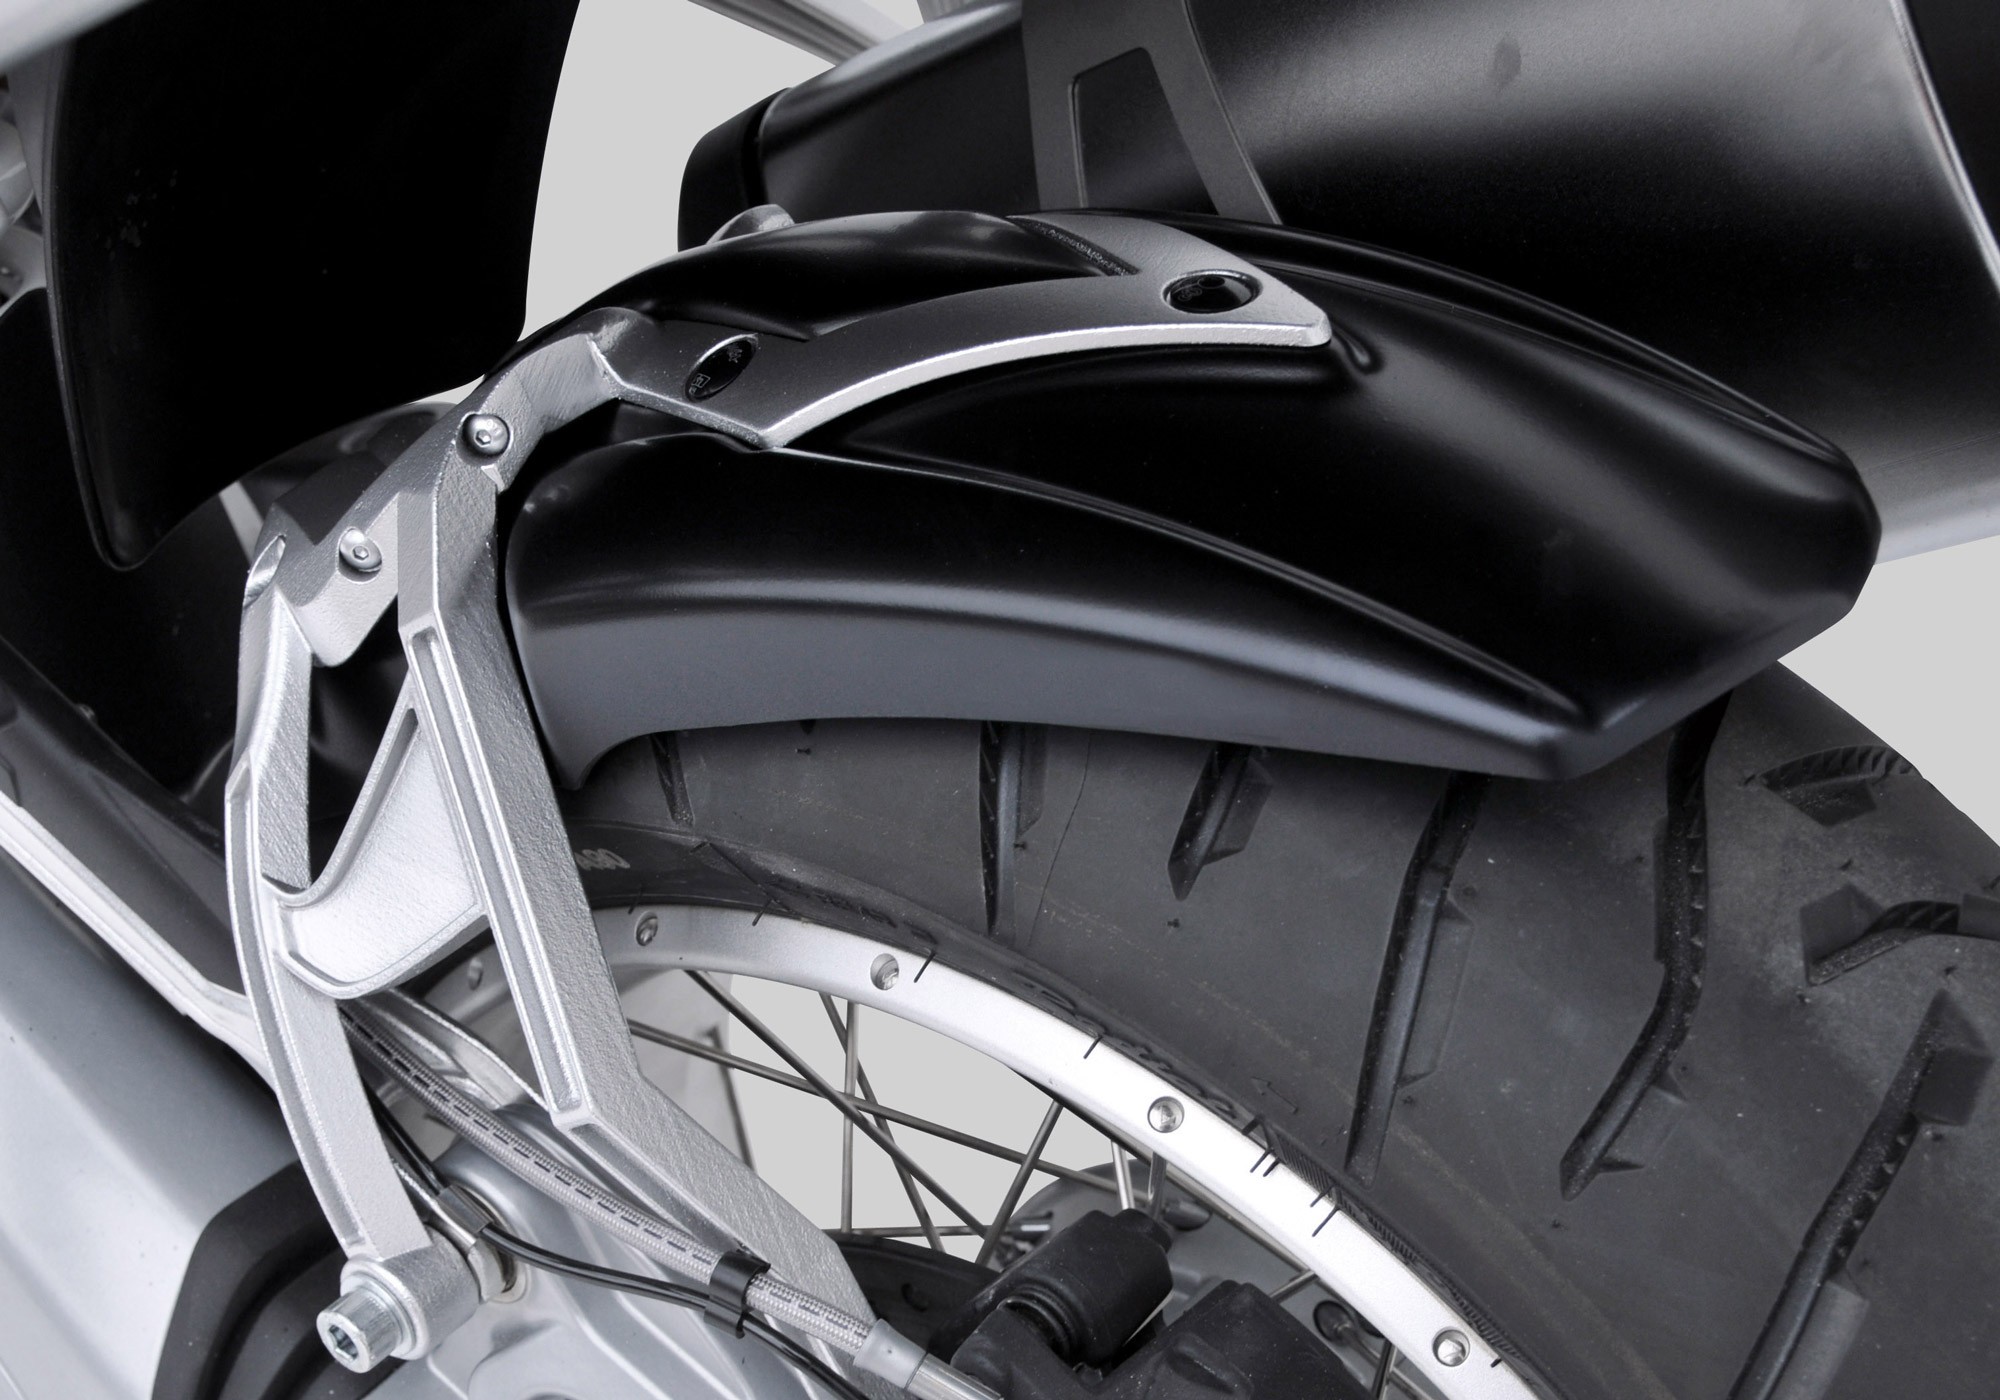 BODYSTYLE Sportsline Hinterradabdeckung Carbon Look ABE passt für BMW R 1200 GS, R 1200 GS, R 1250 GS